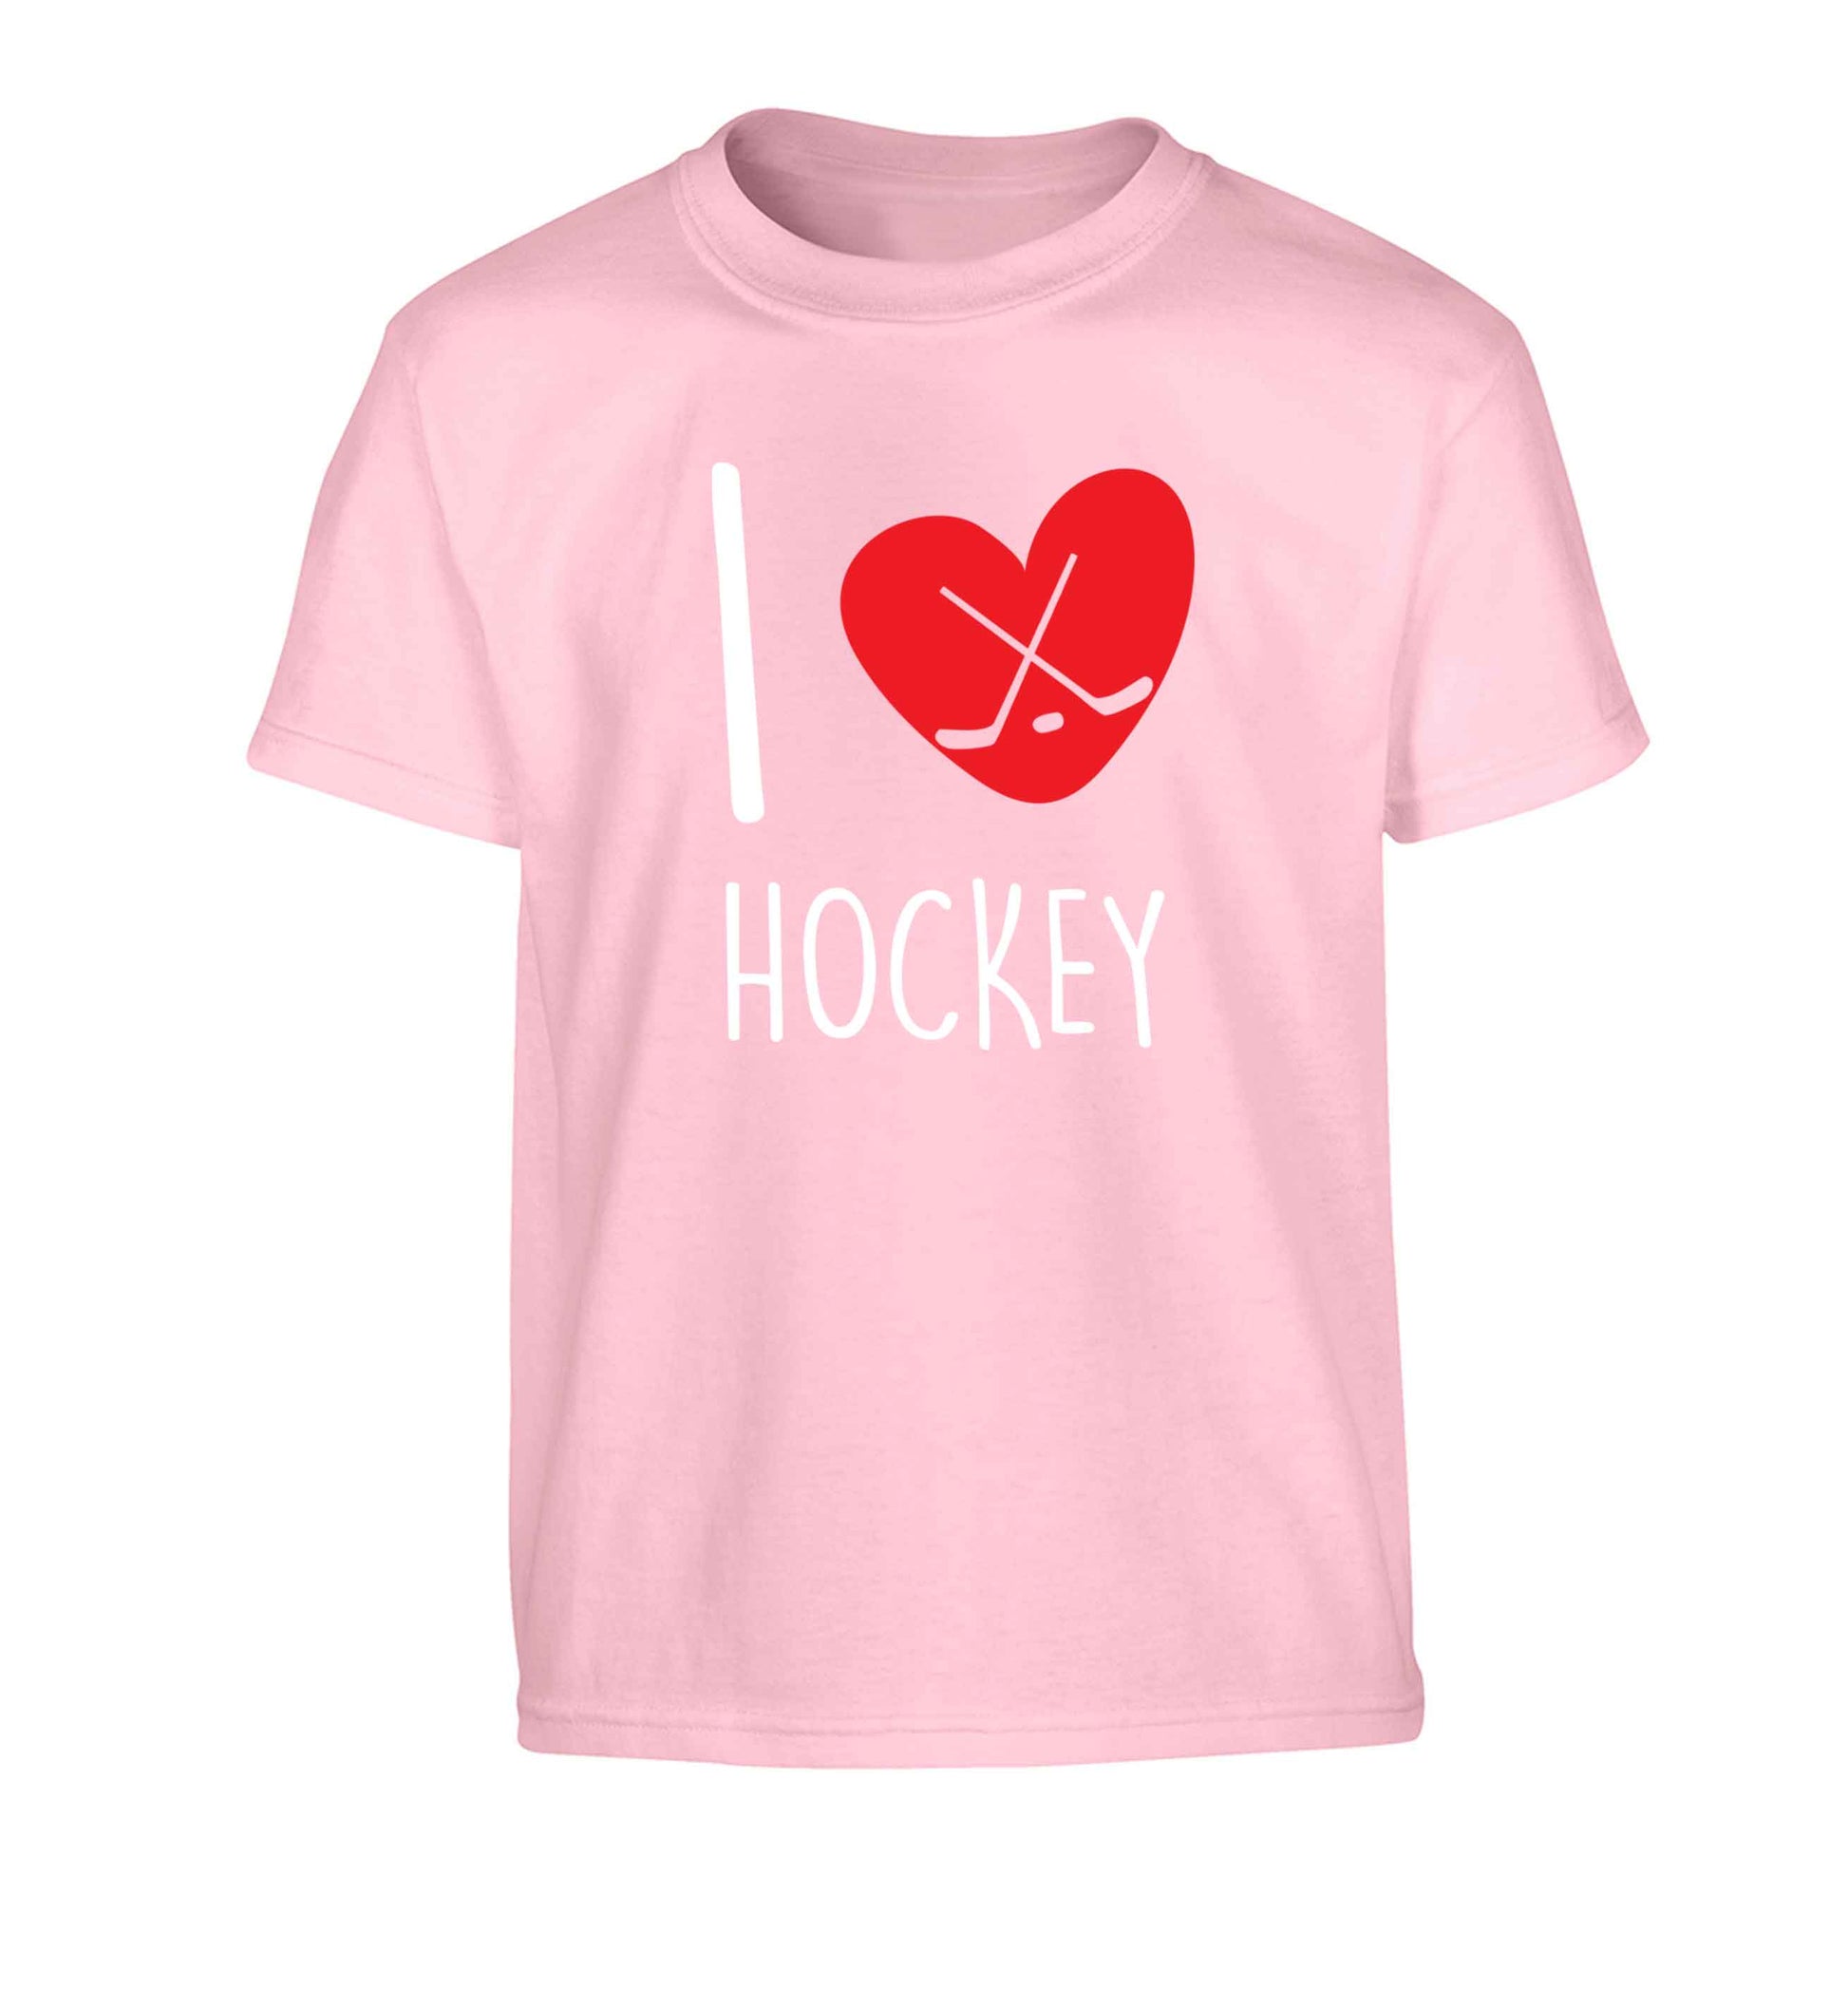 I love hockey Children's light pink Tshirt 12-13 Years